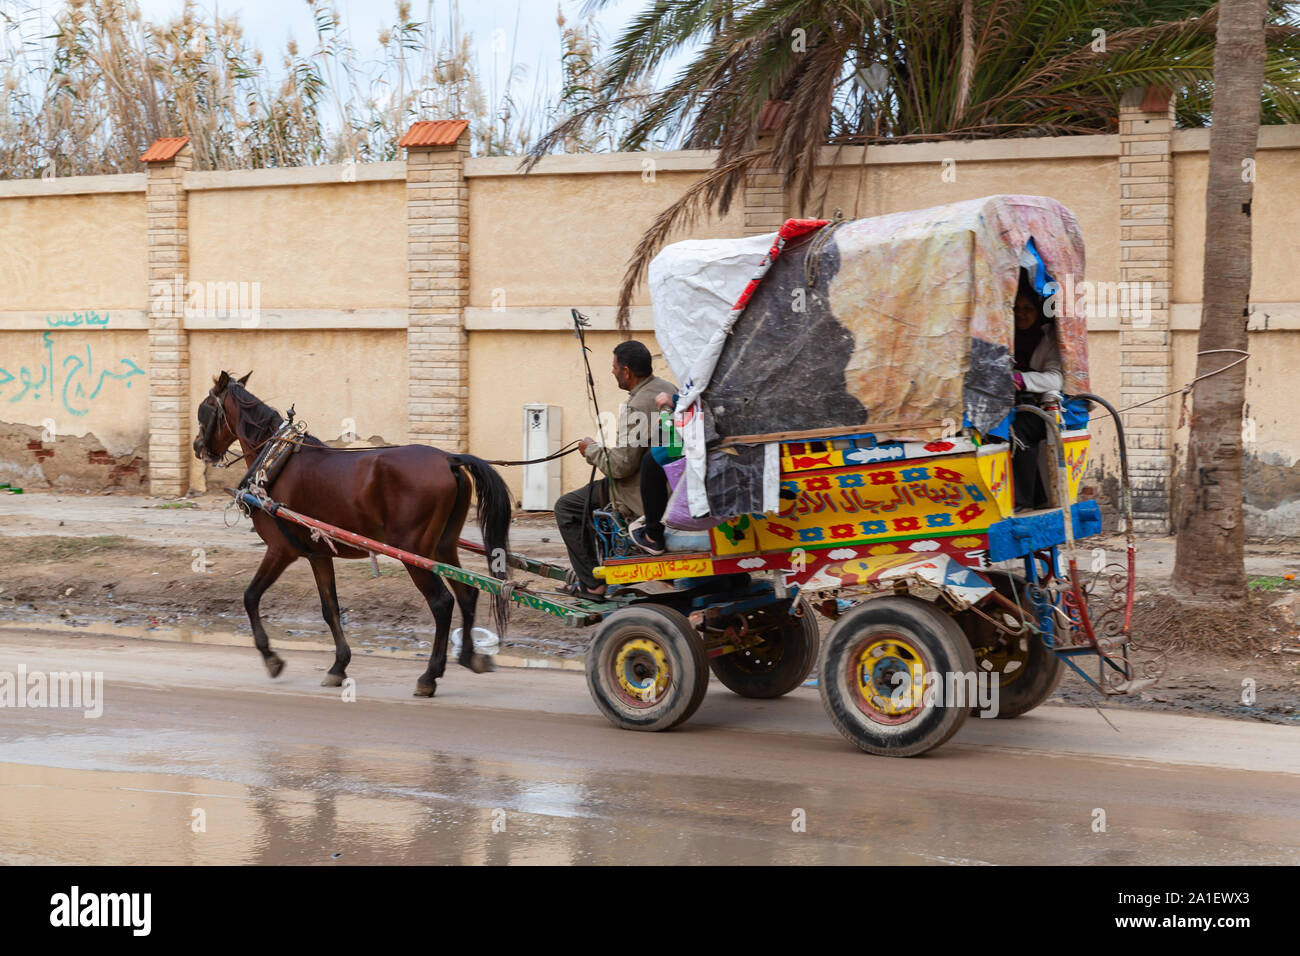 Alexandria, Ägypten - Dezember 20, 2018: Bunte von Pferden gezogene Wagen mit Passagieren und Coachman reitet auf einem schmutzigen nassen Straße von Alexandria Stockfoto